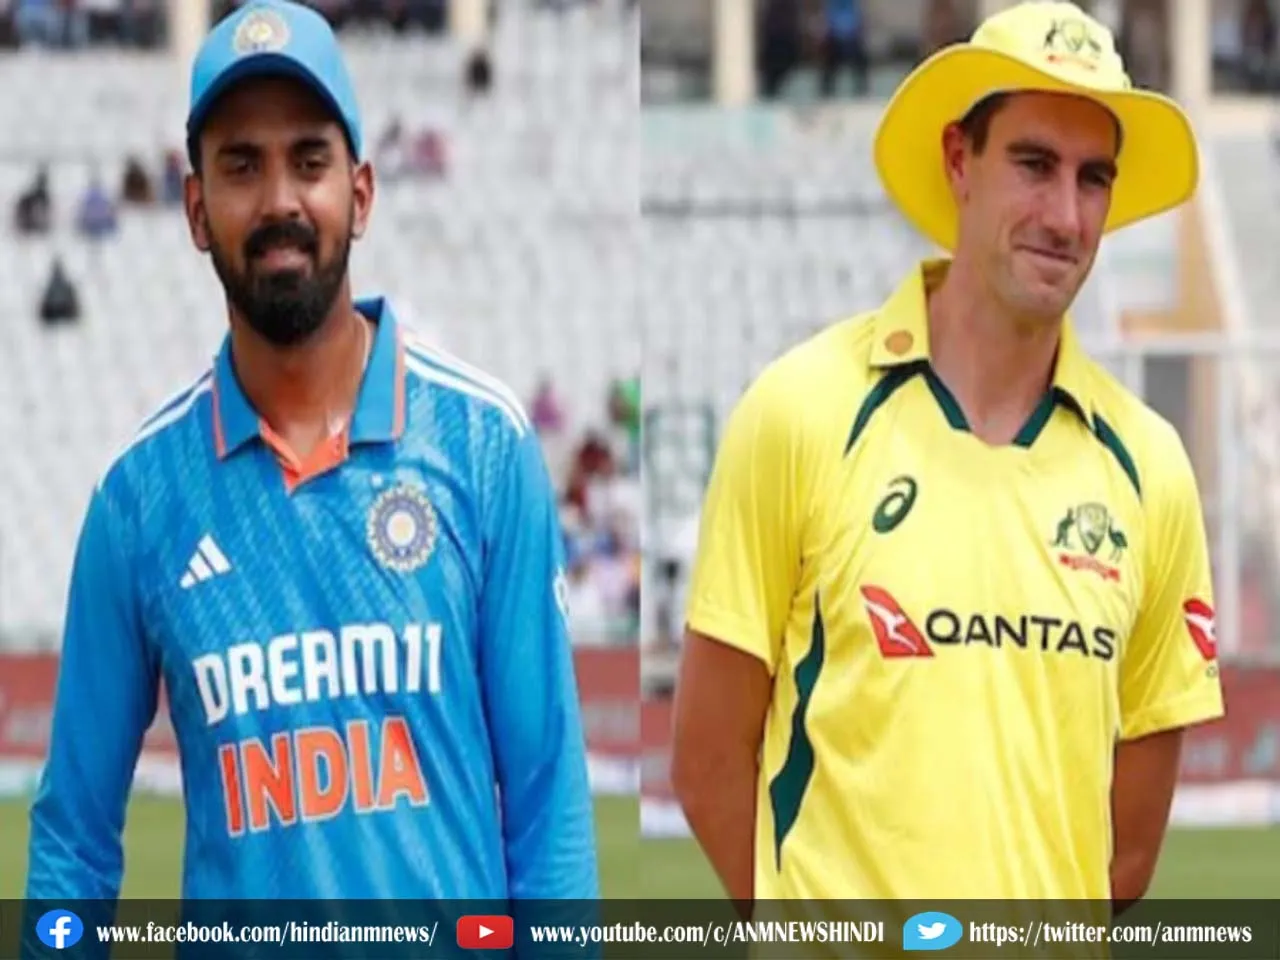 IND vs AUS 2nd ODI: भारत और ऑस्ट्रेलिया के बीच वनडे सीरीज का दूसरा मुकाबला आज